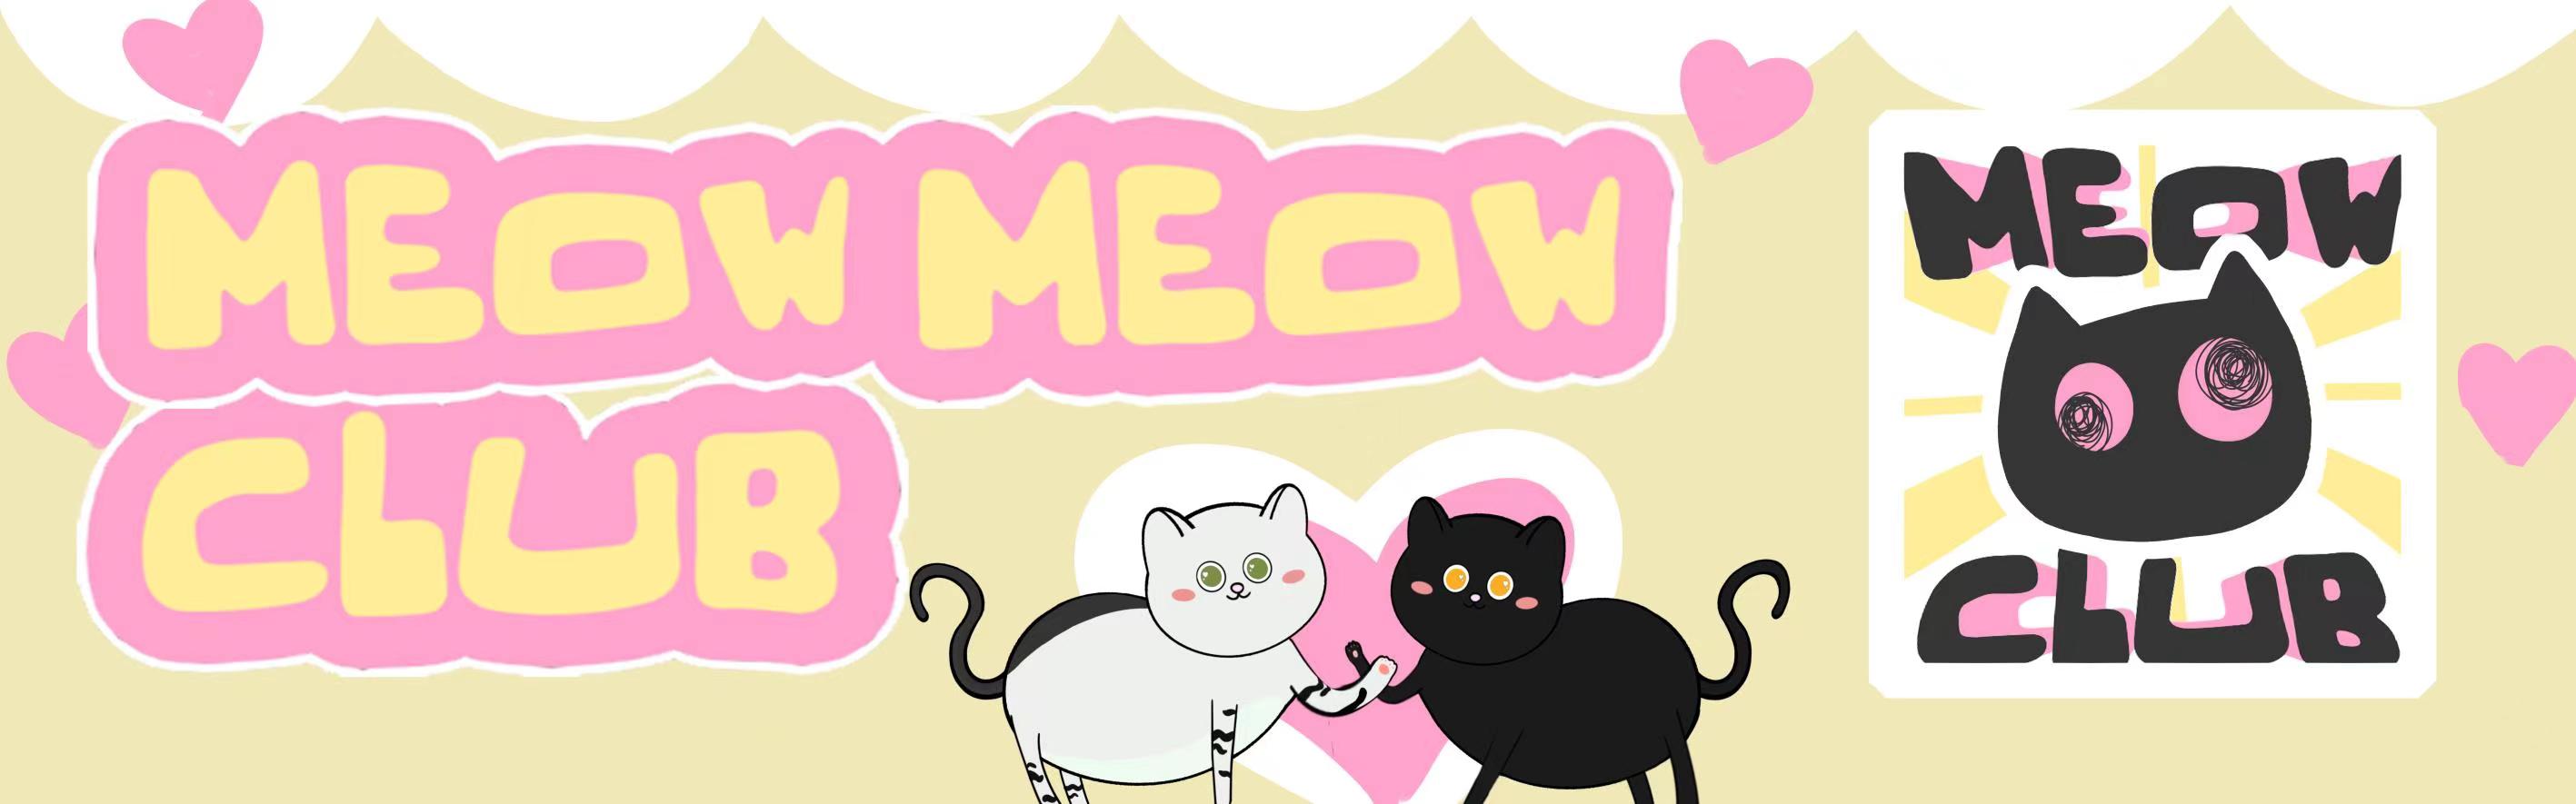 MeowMeow Club